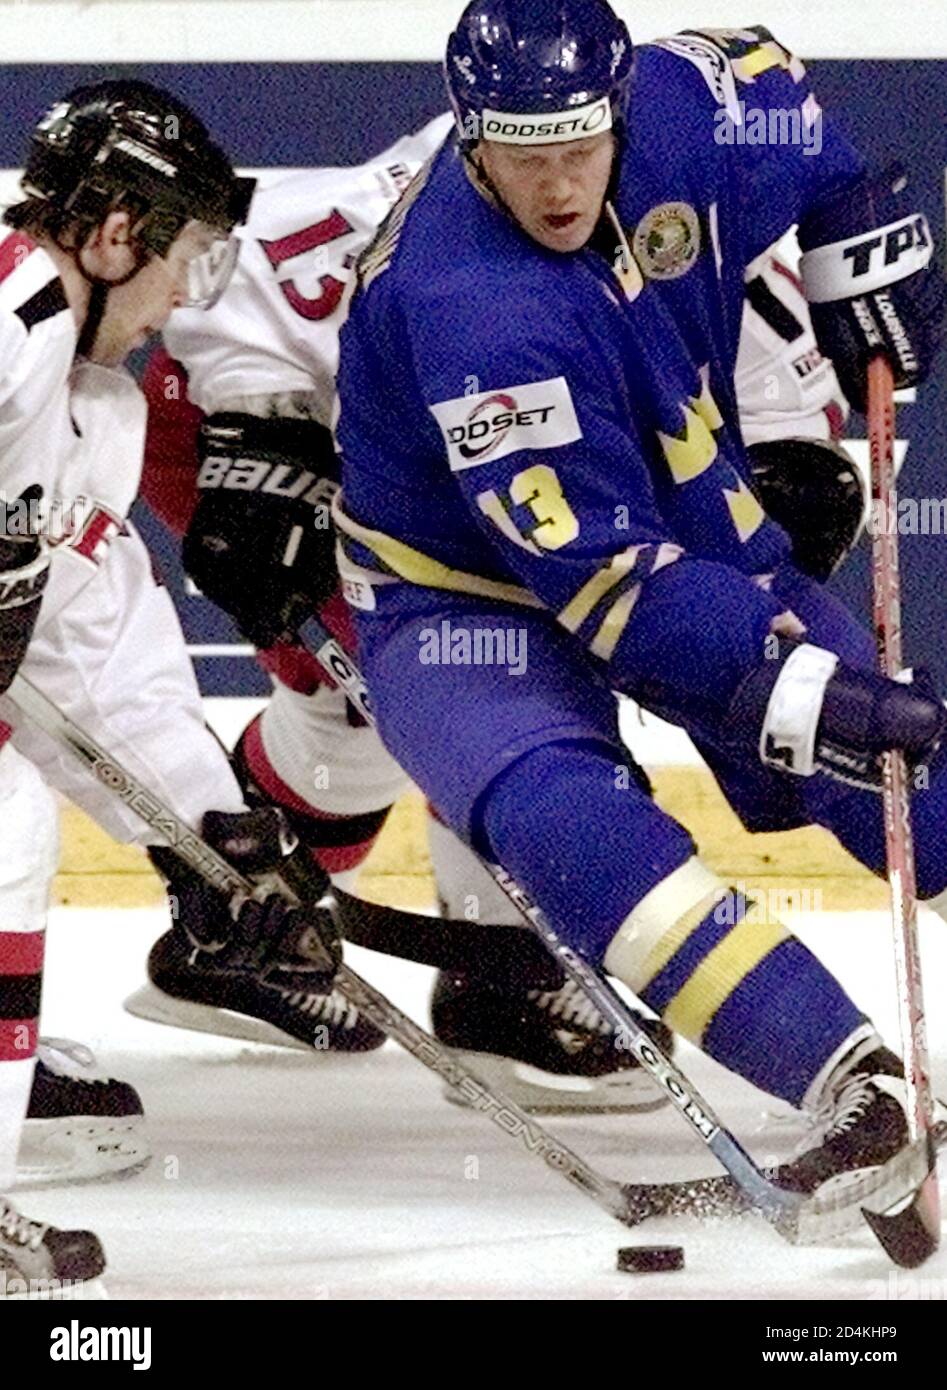 Mats Sundin (R) aus Schweden versucht, einen Puck an der Schweiz vorbei zu schieben Beat Forster (L) während ihres Qualifikationsrunden-Spiels bei der Eishockey-Weltmeisterschaft in Turku, 6. Mai 2003. Schweden mit 5:2. REUTERS/Alexander Demianchuk AD Stockfoto